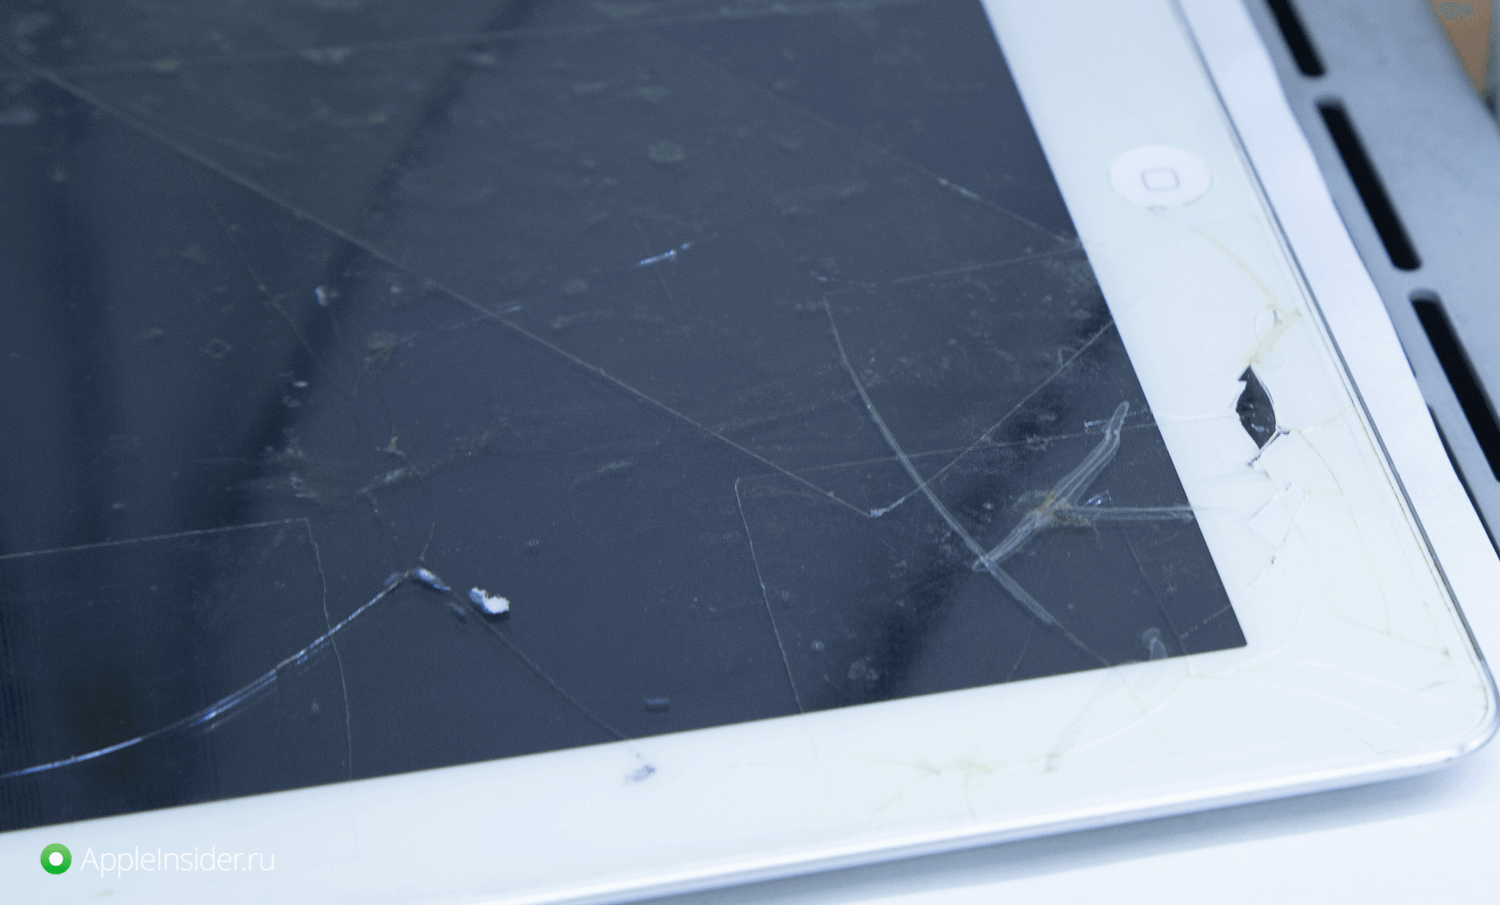 iPad Mini 5упал и разбилось стекло